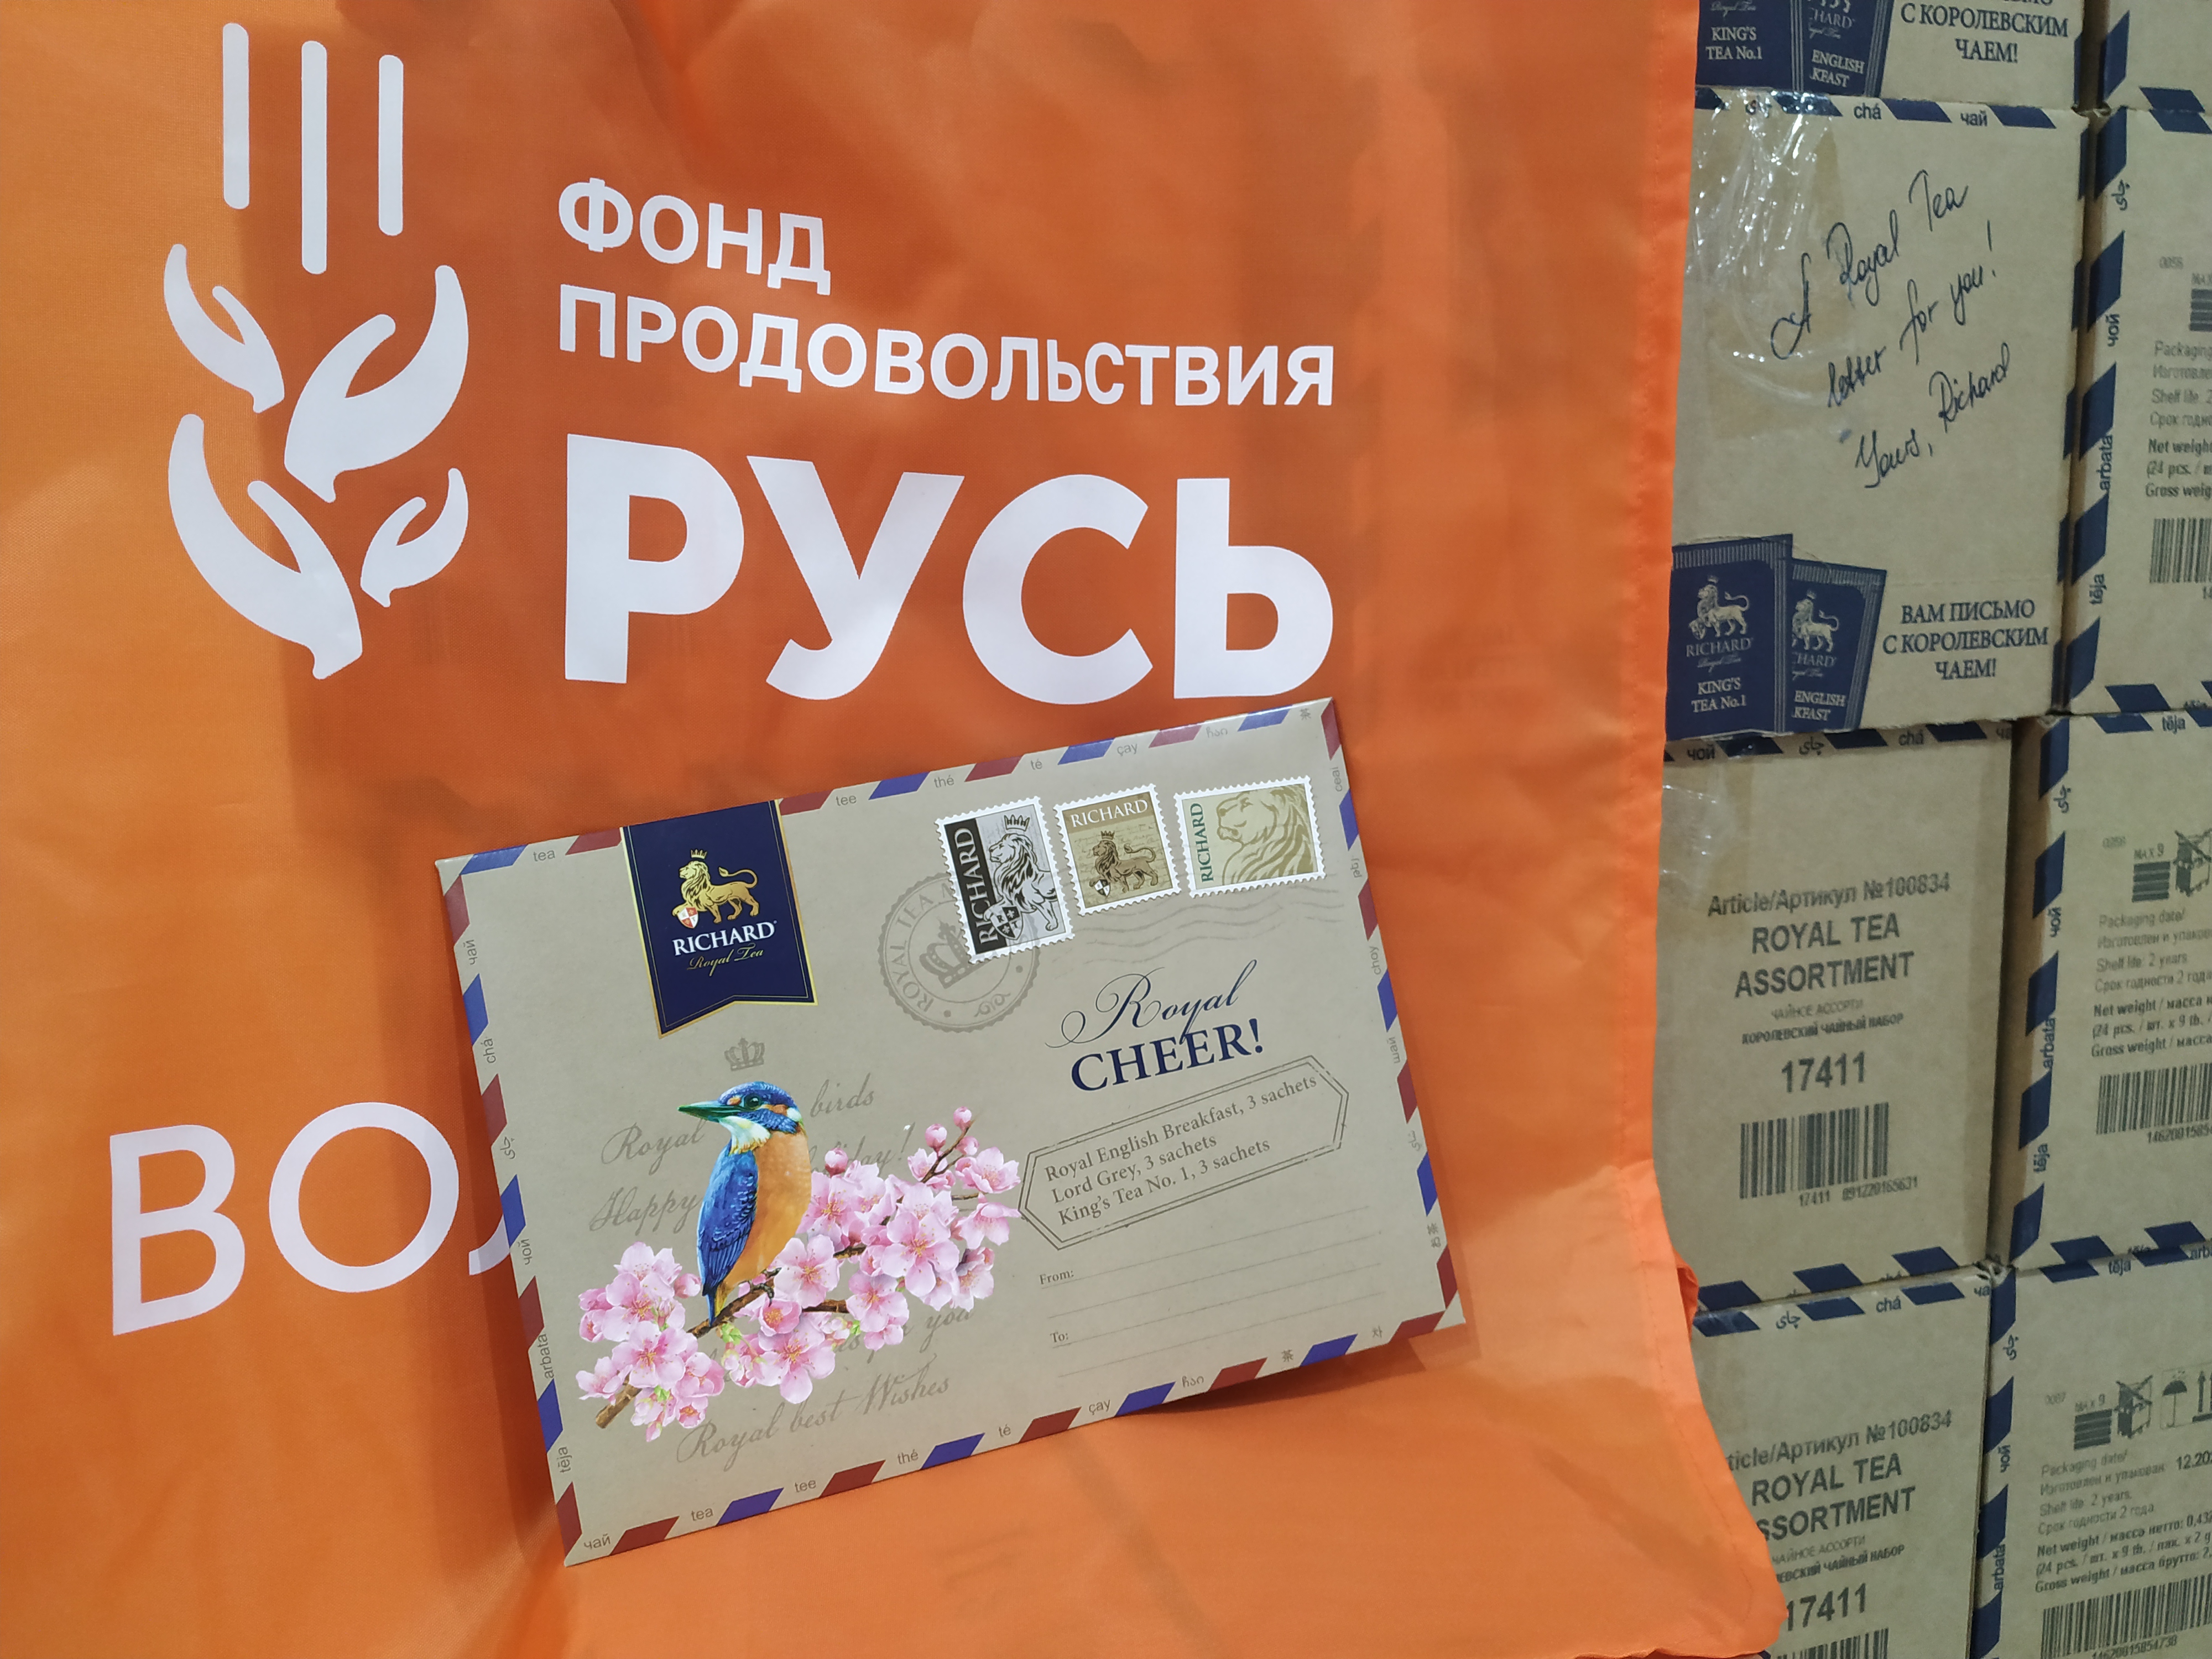 Компания МАЙ передала чай в банк еды «Русь»   